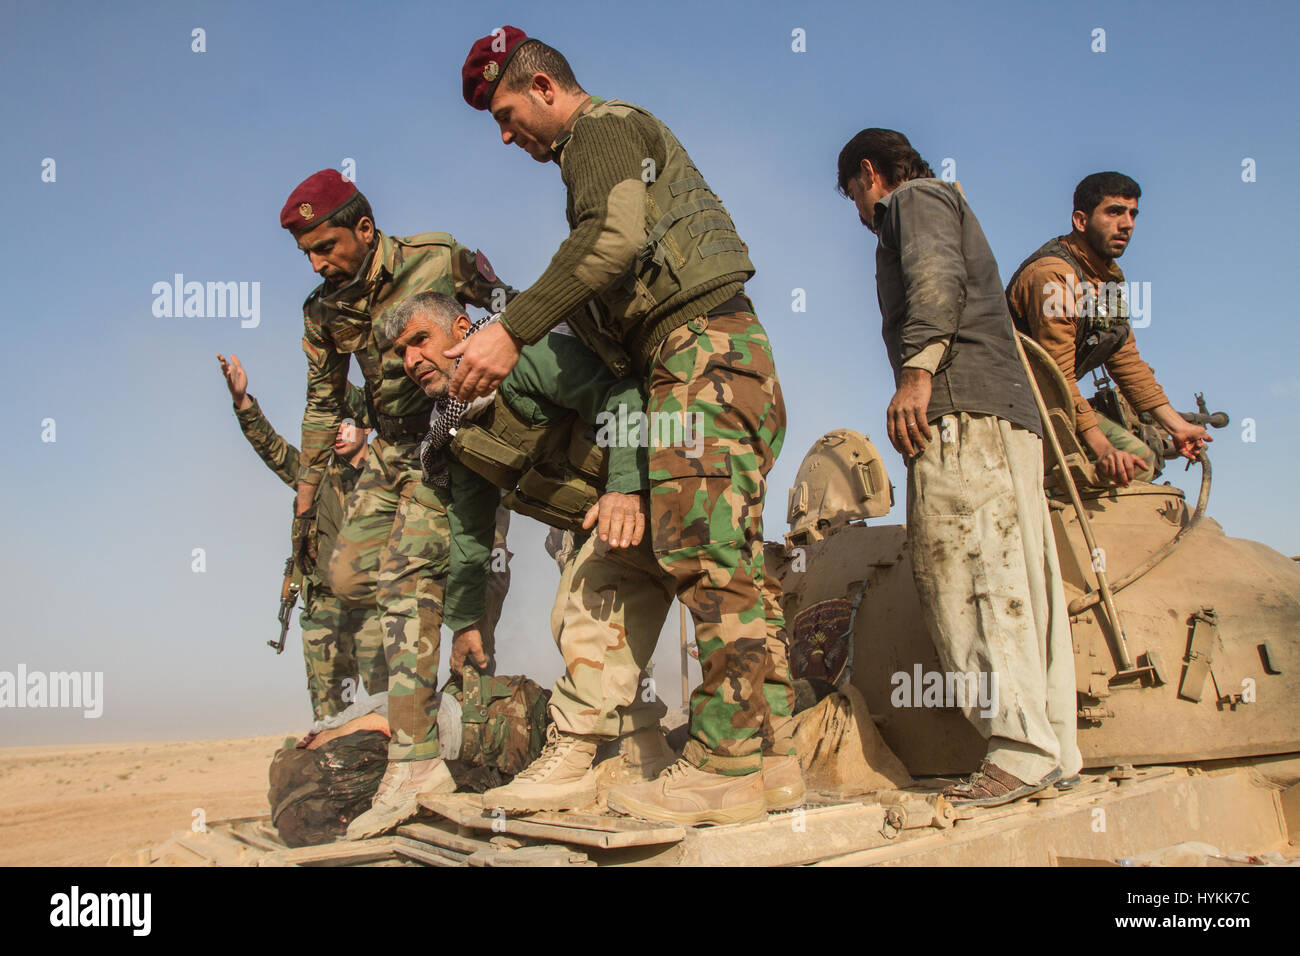 Das Entfernen eines toten Soldaten von einem t-55 Panzer, deren Kopf von einem Anti-Tank explodierte, Granate oder Anti-Tank Gewehr in der Nähe der Khorsabad vorwärts operative Basis angetrieben. UNGLAUBLICHE Bilder von Anti ISIS Kräfte im Kampf gegen den so genannten islamischen Staat in Mosul wurden gefangen genommen. Die Fotos zeigen Sanitäter, die Behandlung von verletzten Soldaten und einem zerstörten Auto Selbstmordattentäter. Andere Bilder zeigen iranische Arbeitsgruppen unter Peshmerga Kräfte, um die ISIS-Territorium aufzuteilen. Die Bilder wurden von Oxford ausgebildet Jan Husar, die Aktion folgte. Jan Husar / mediadrumworld.com Stockfoto